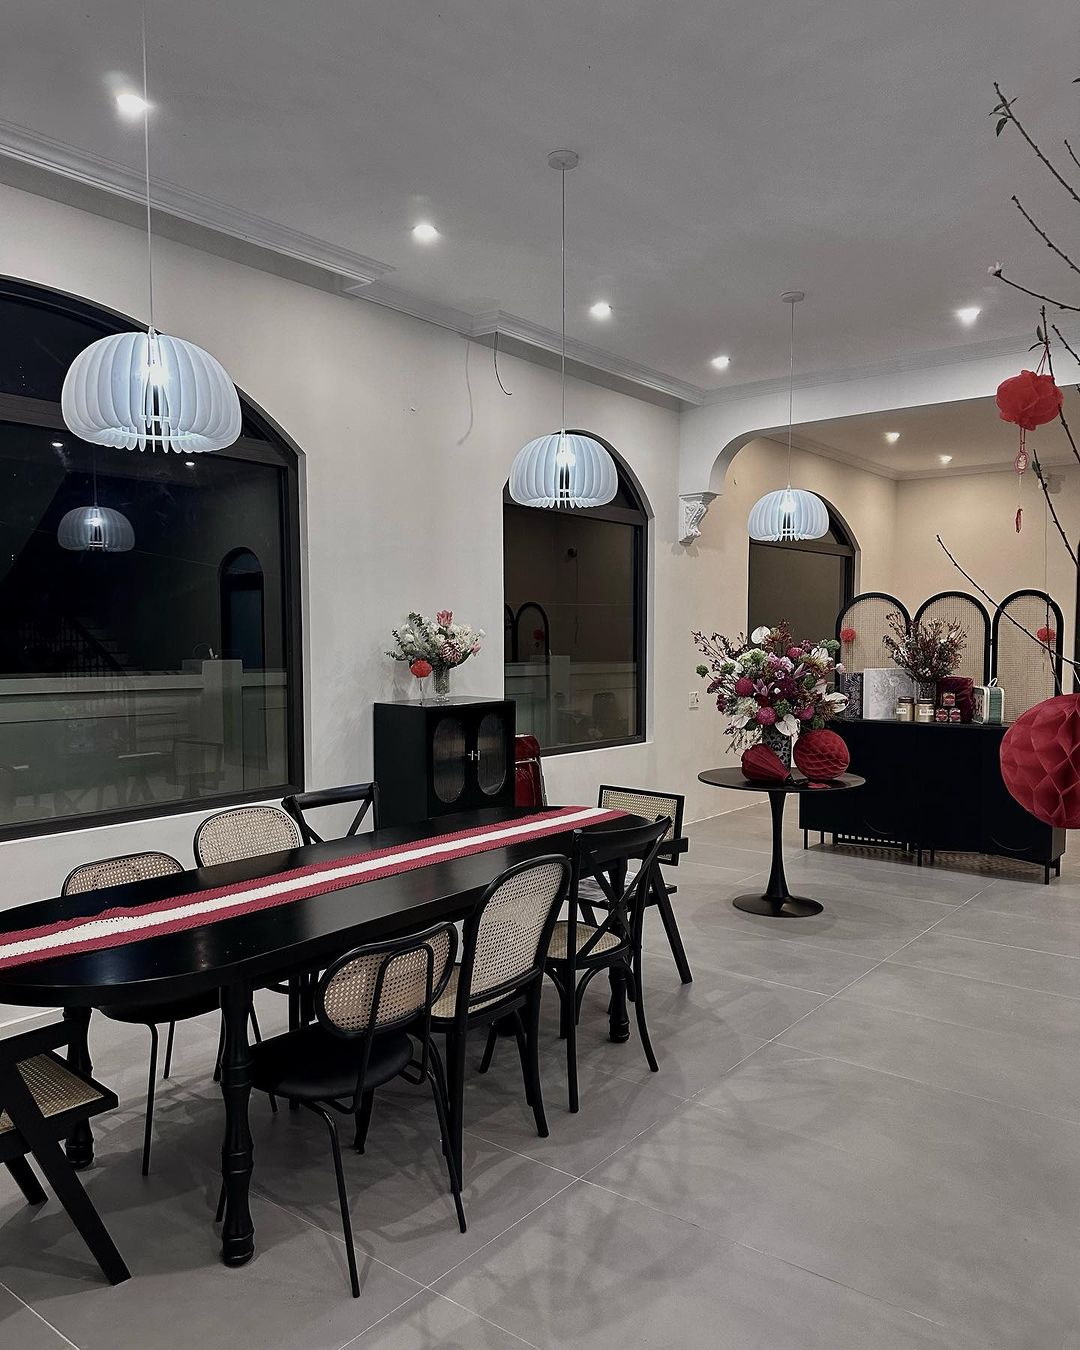 Quỳnh Lương ''unbox'' biệt thự mới đúng Mùng 1 Tết, khoe nhà rộng đến nỗi sắm nội thất không xuể- Ảnh 3.